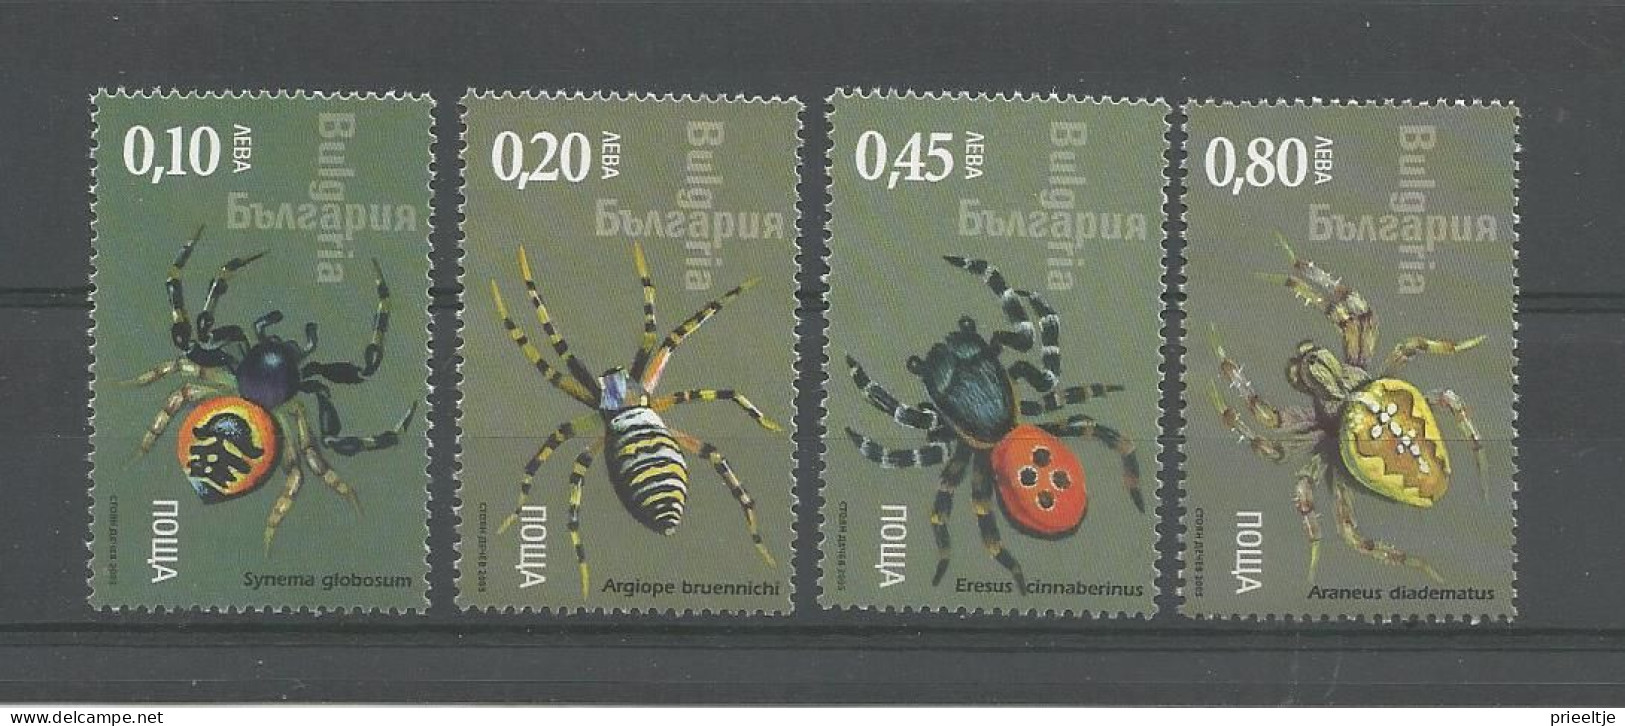 Bulgaria 2005 Spiders Y.T. 4066/4069 ** - Ungebraucht